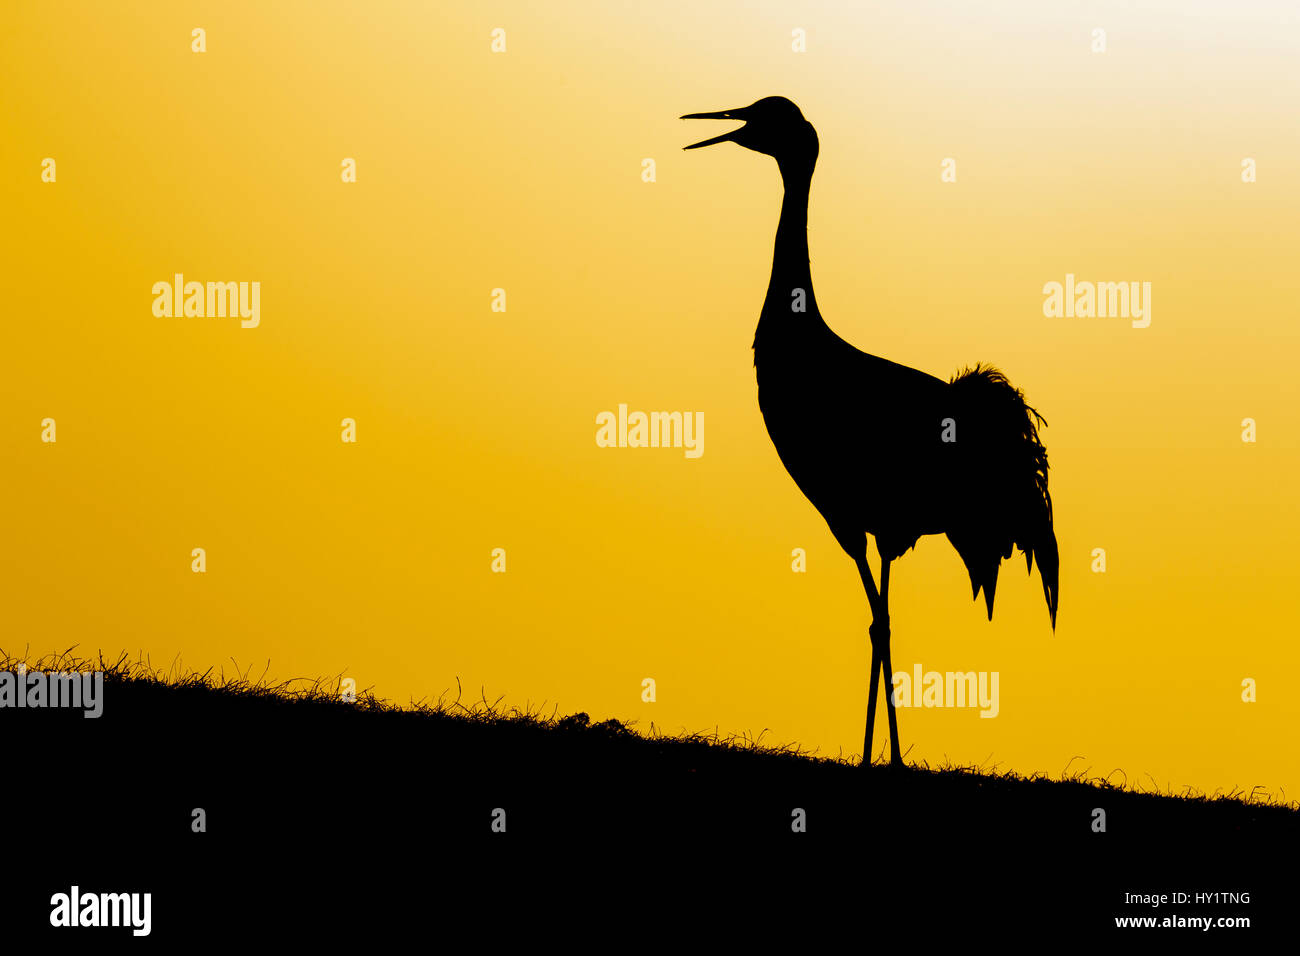 Common / Eurasian crane (Grus grus) calling at sunset, silhouette. Lake Hornborga, Sweden, April. Stock Photo